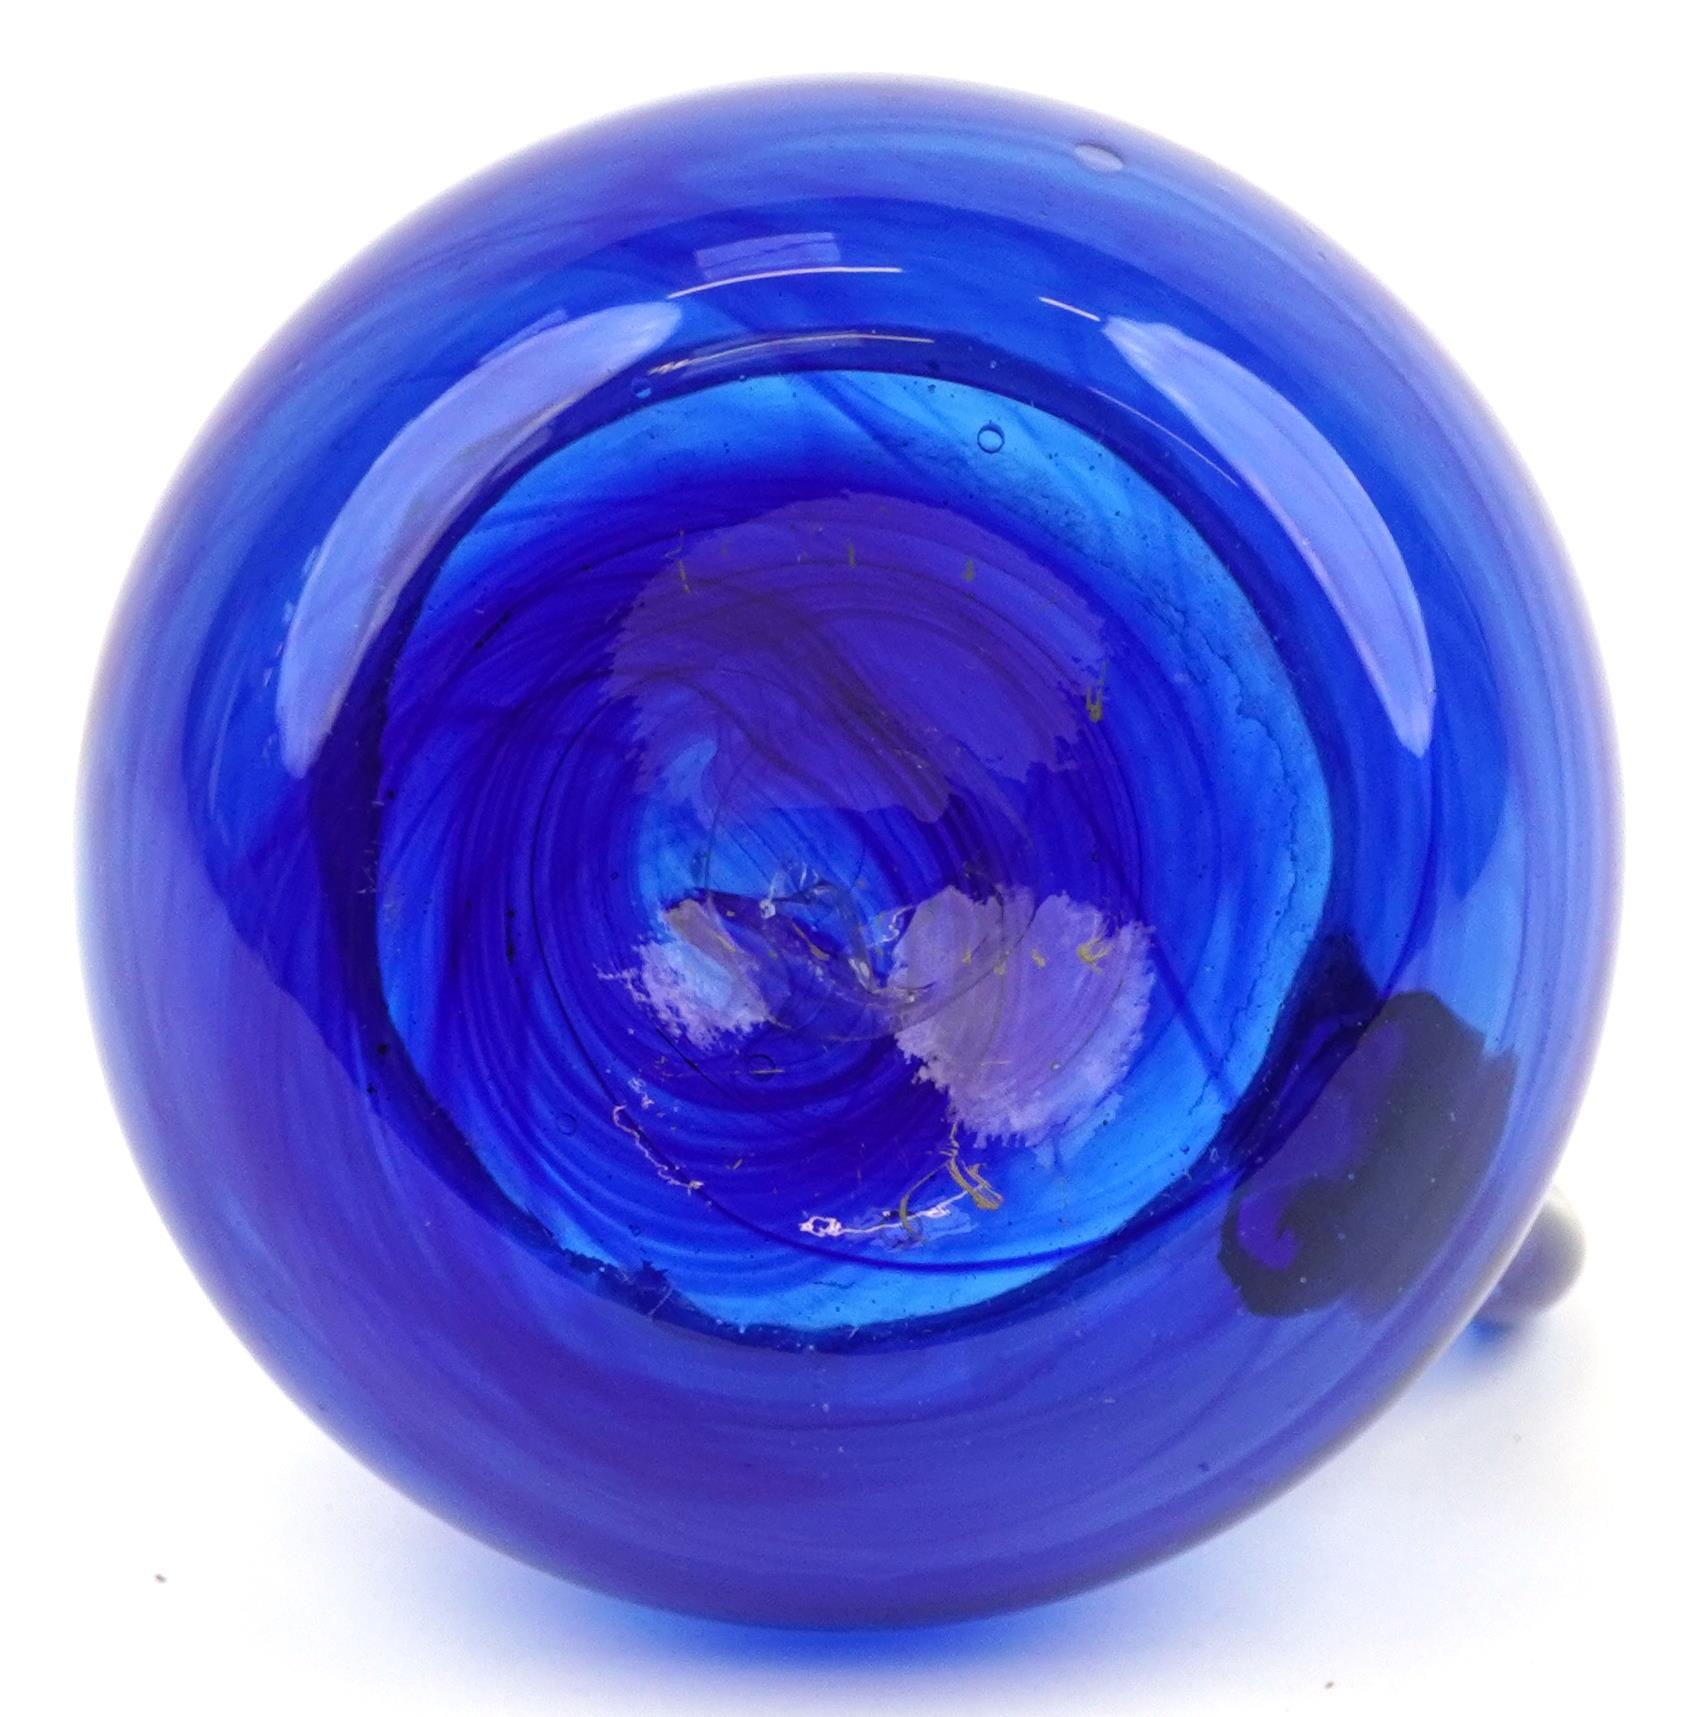 Blue art glass jug with unpolished pontil, 18cm high - Image 4 of 5